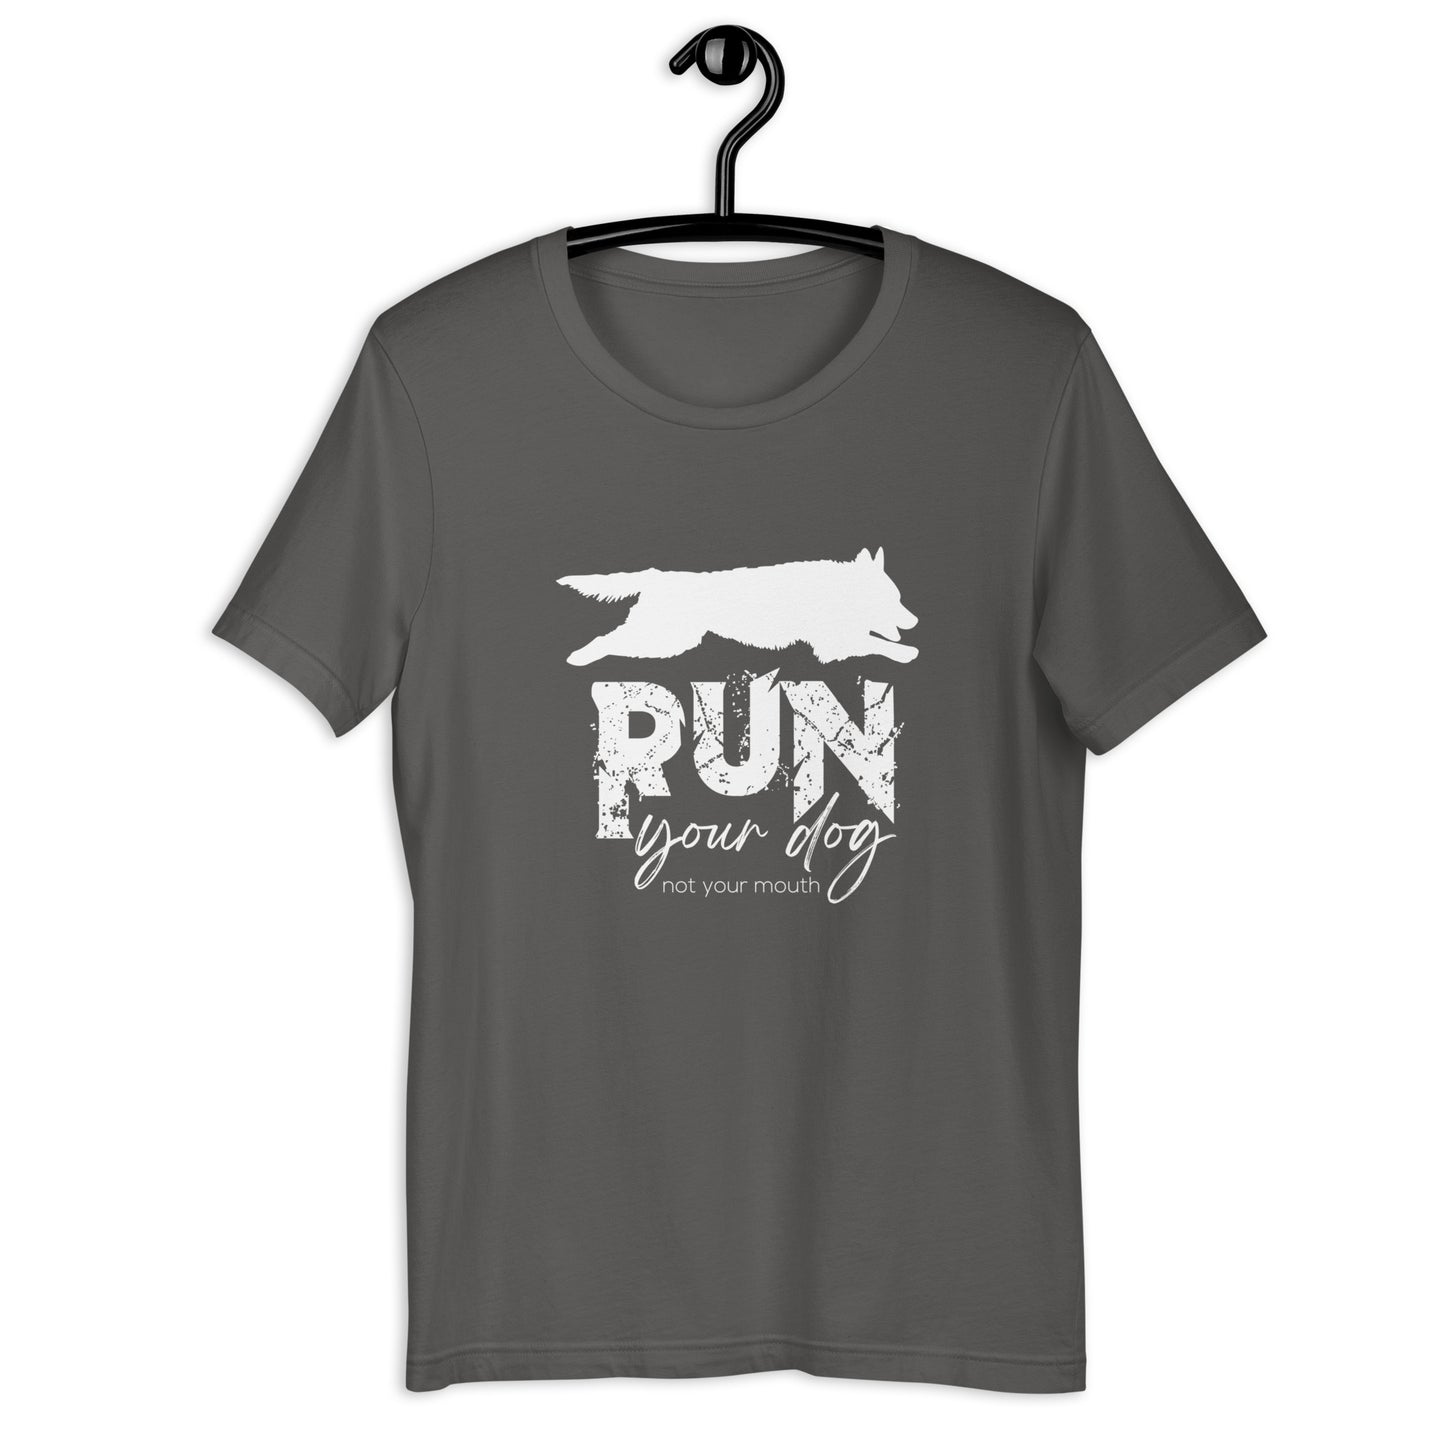 MUDI - RUN YOUR DOG Unisex t-shirt